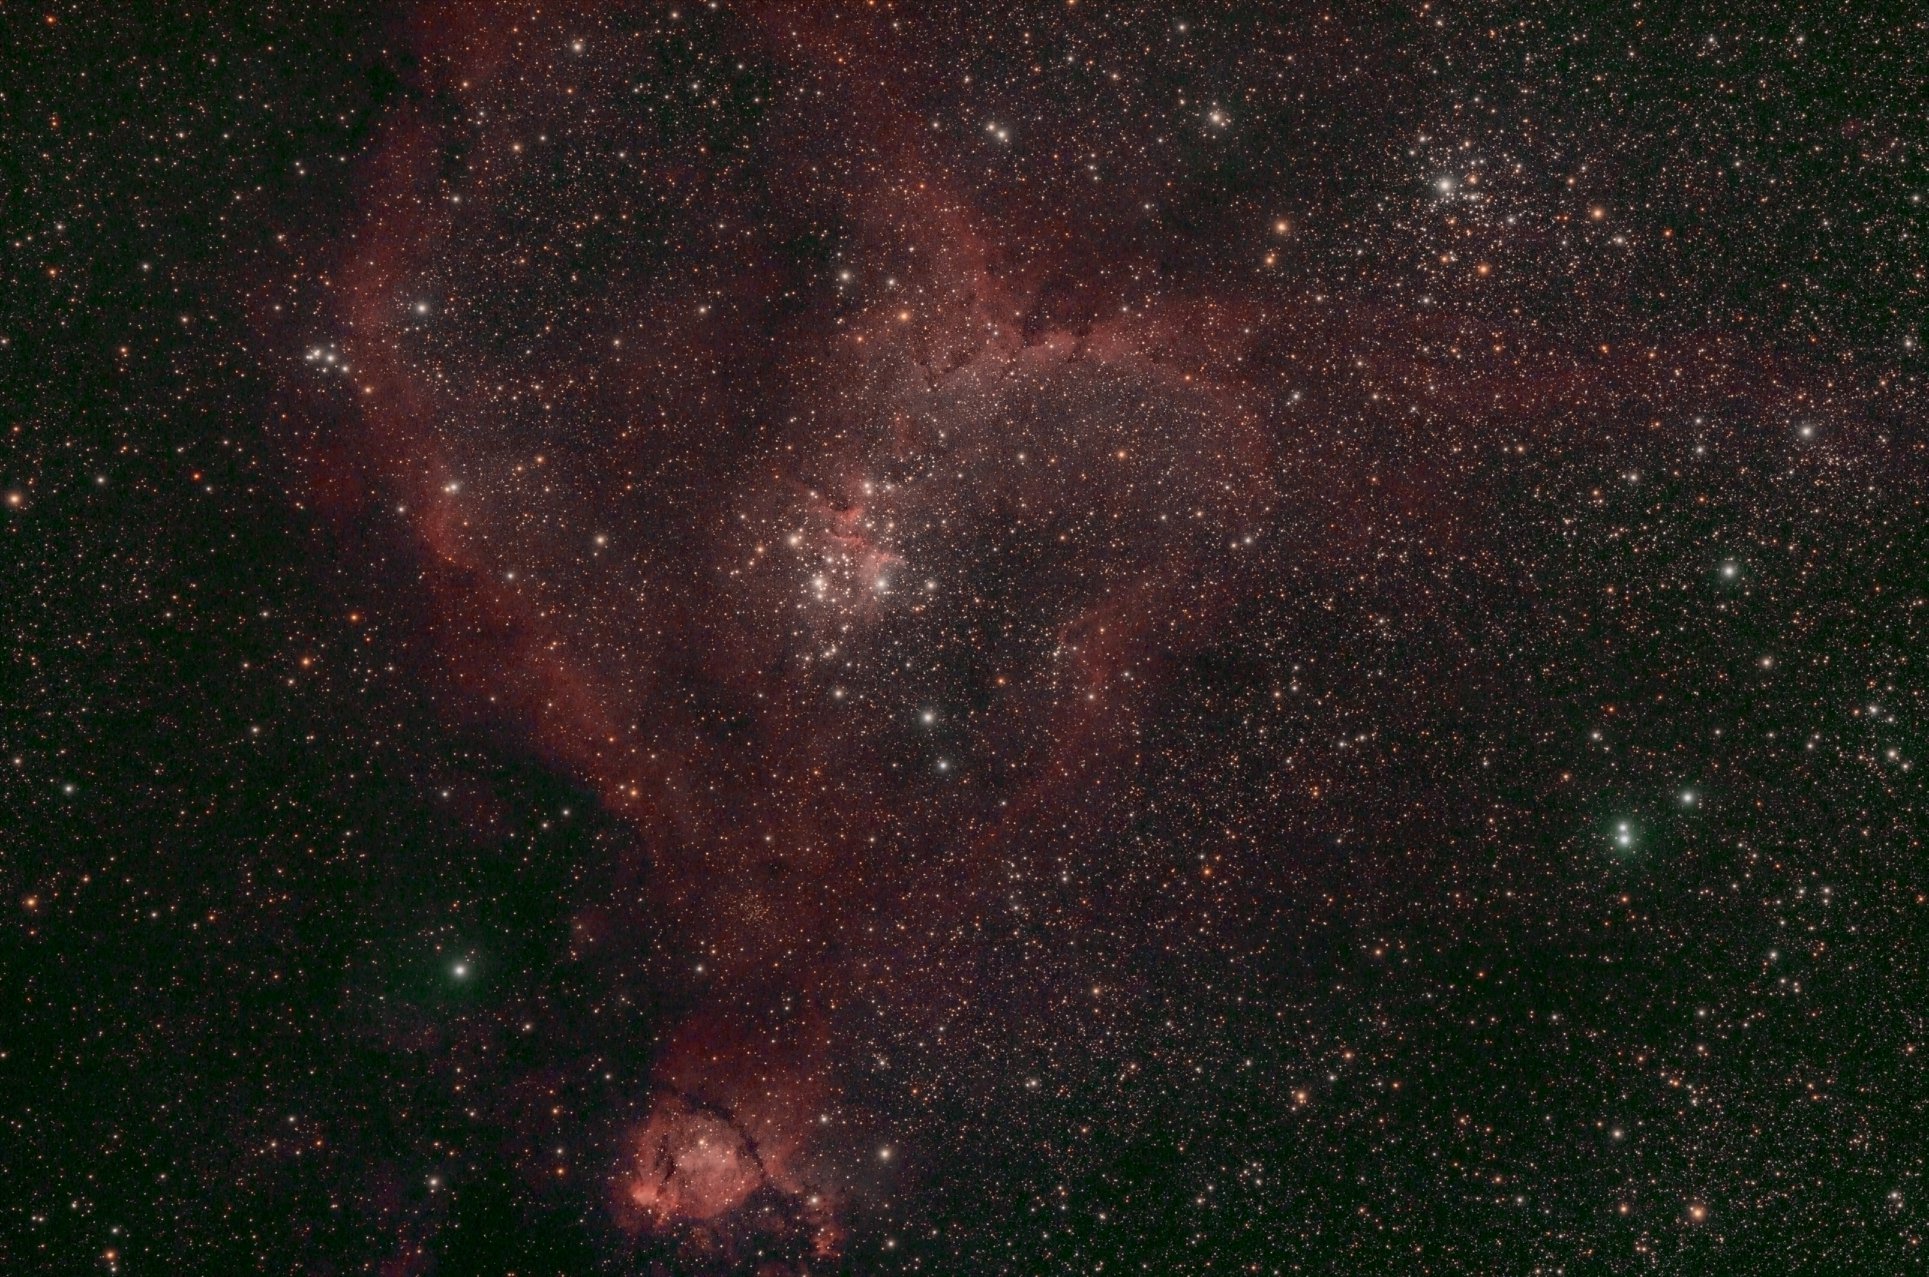 Heart Nebula 2